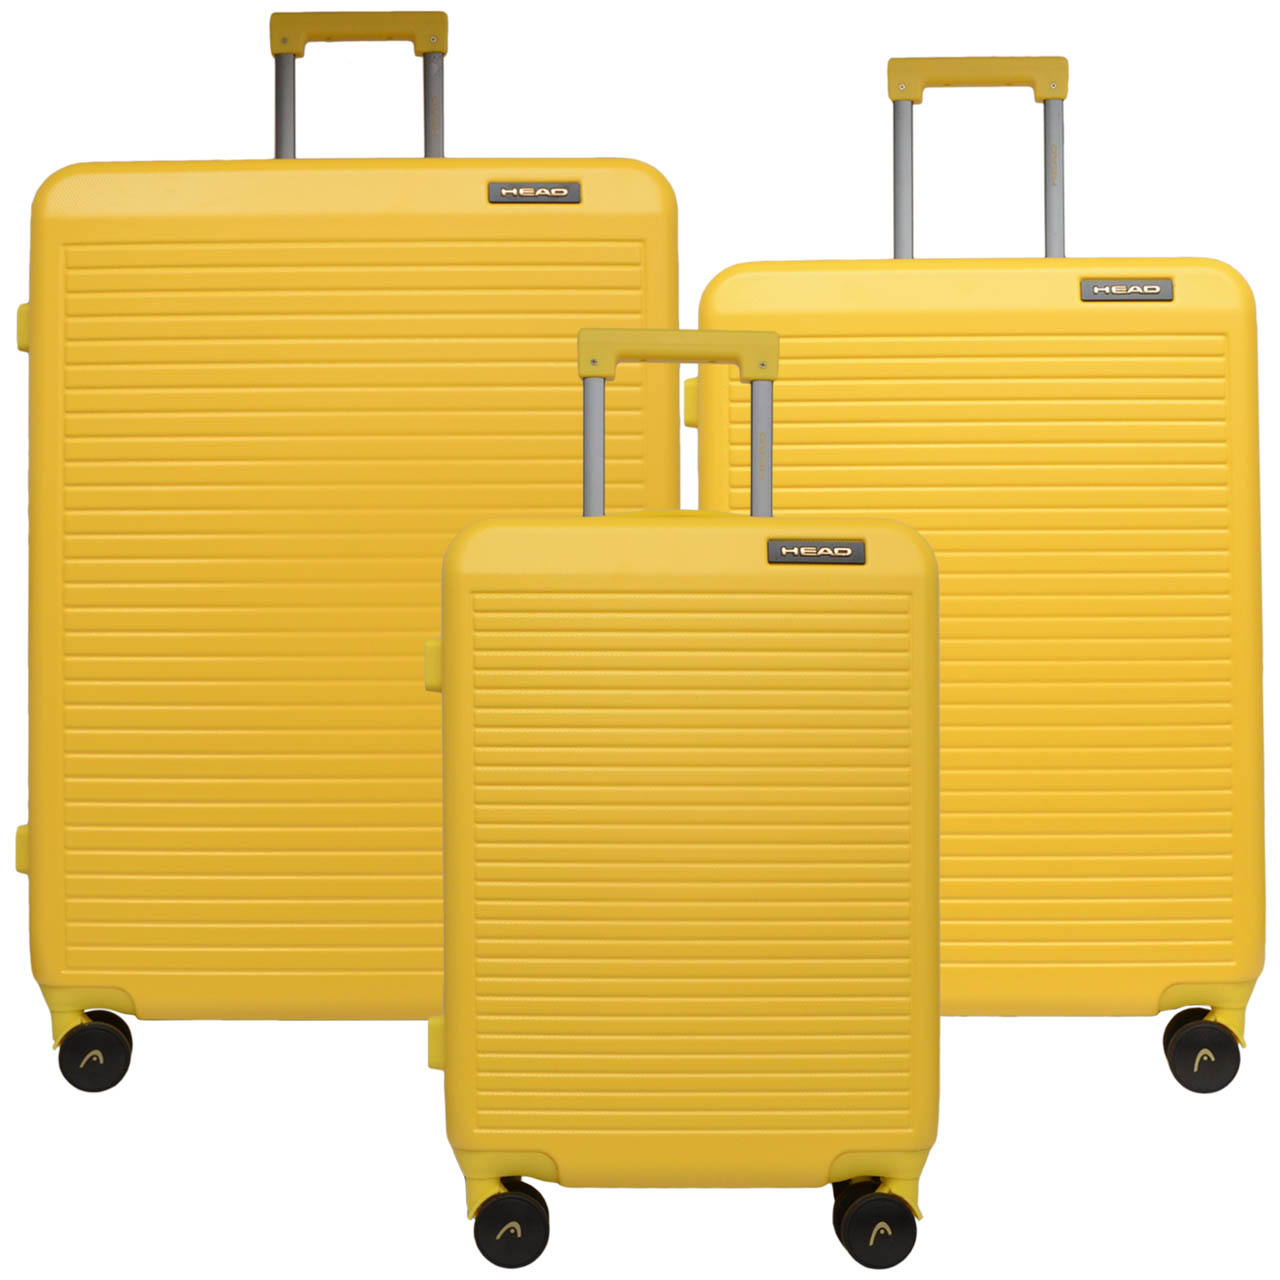 نکته خرید - قیمت روز مجموعه سه عددی چمدان هد مدل HL018-2 خرید